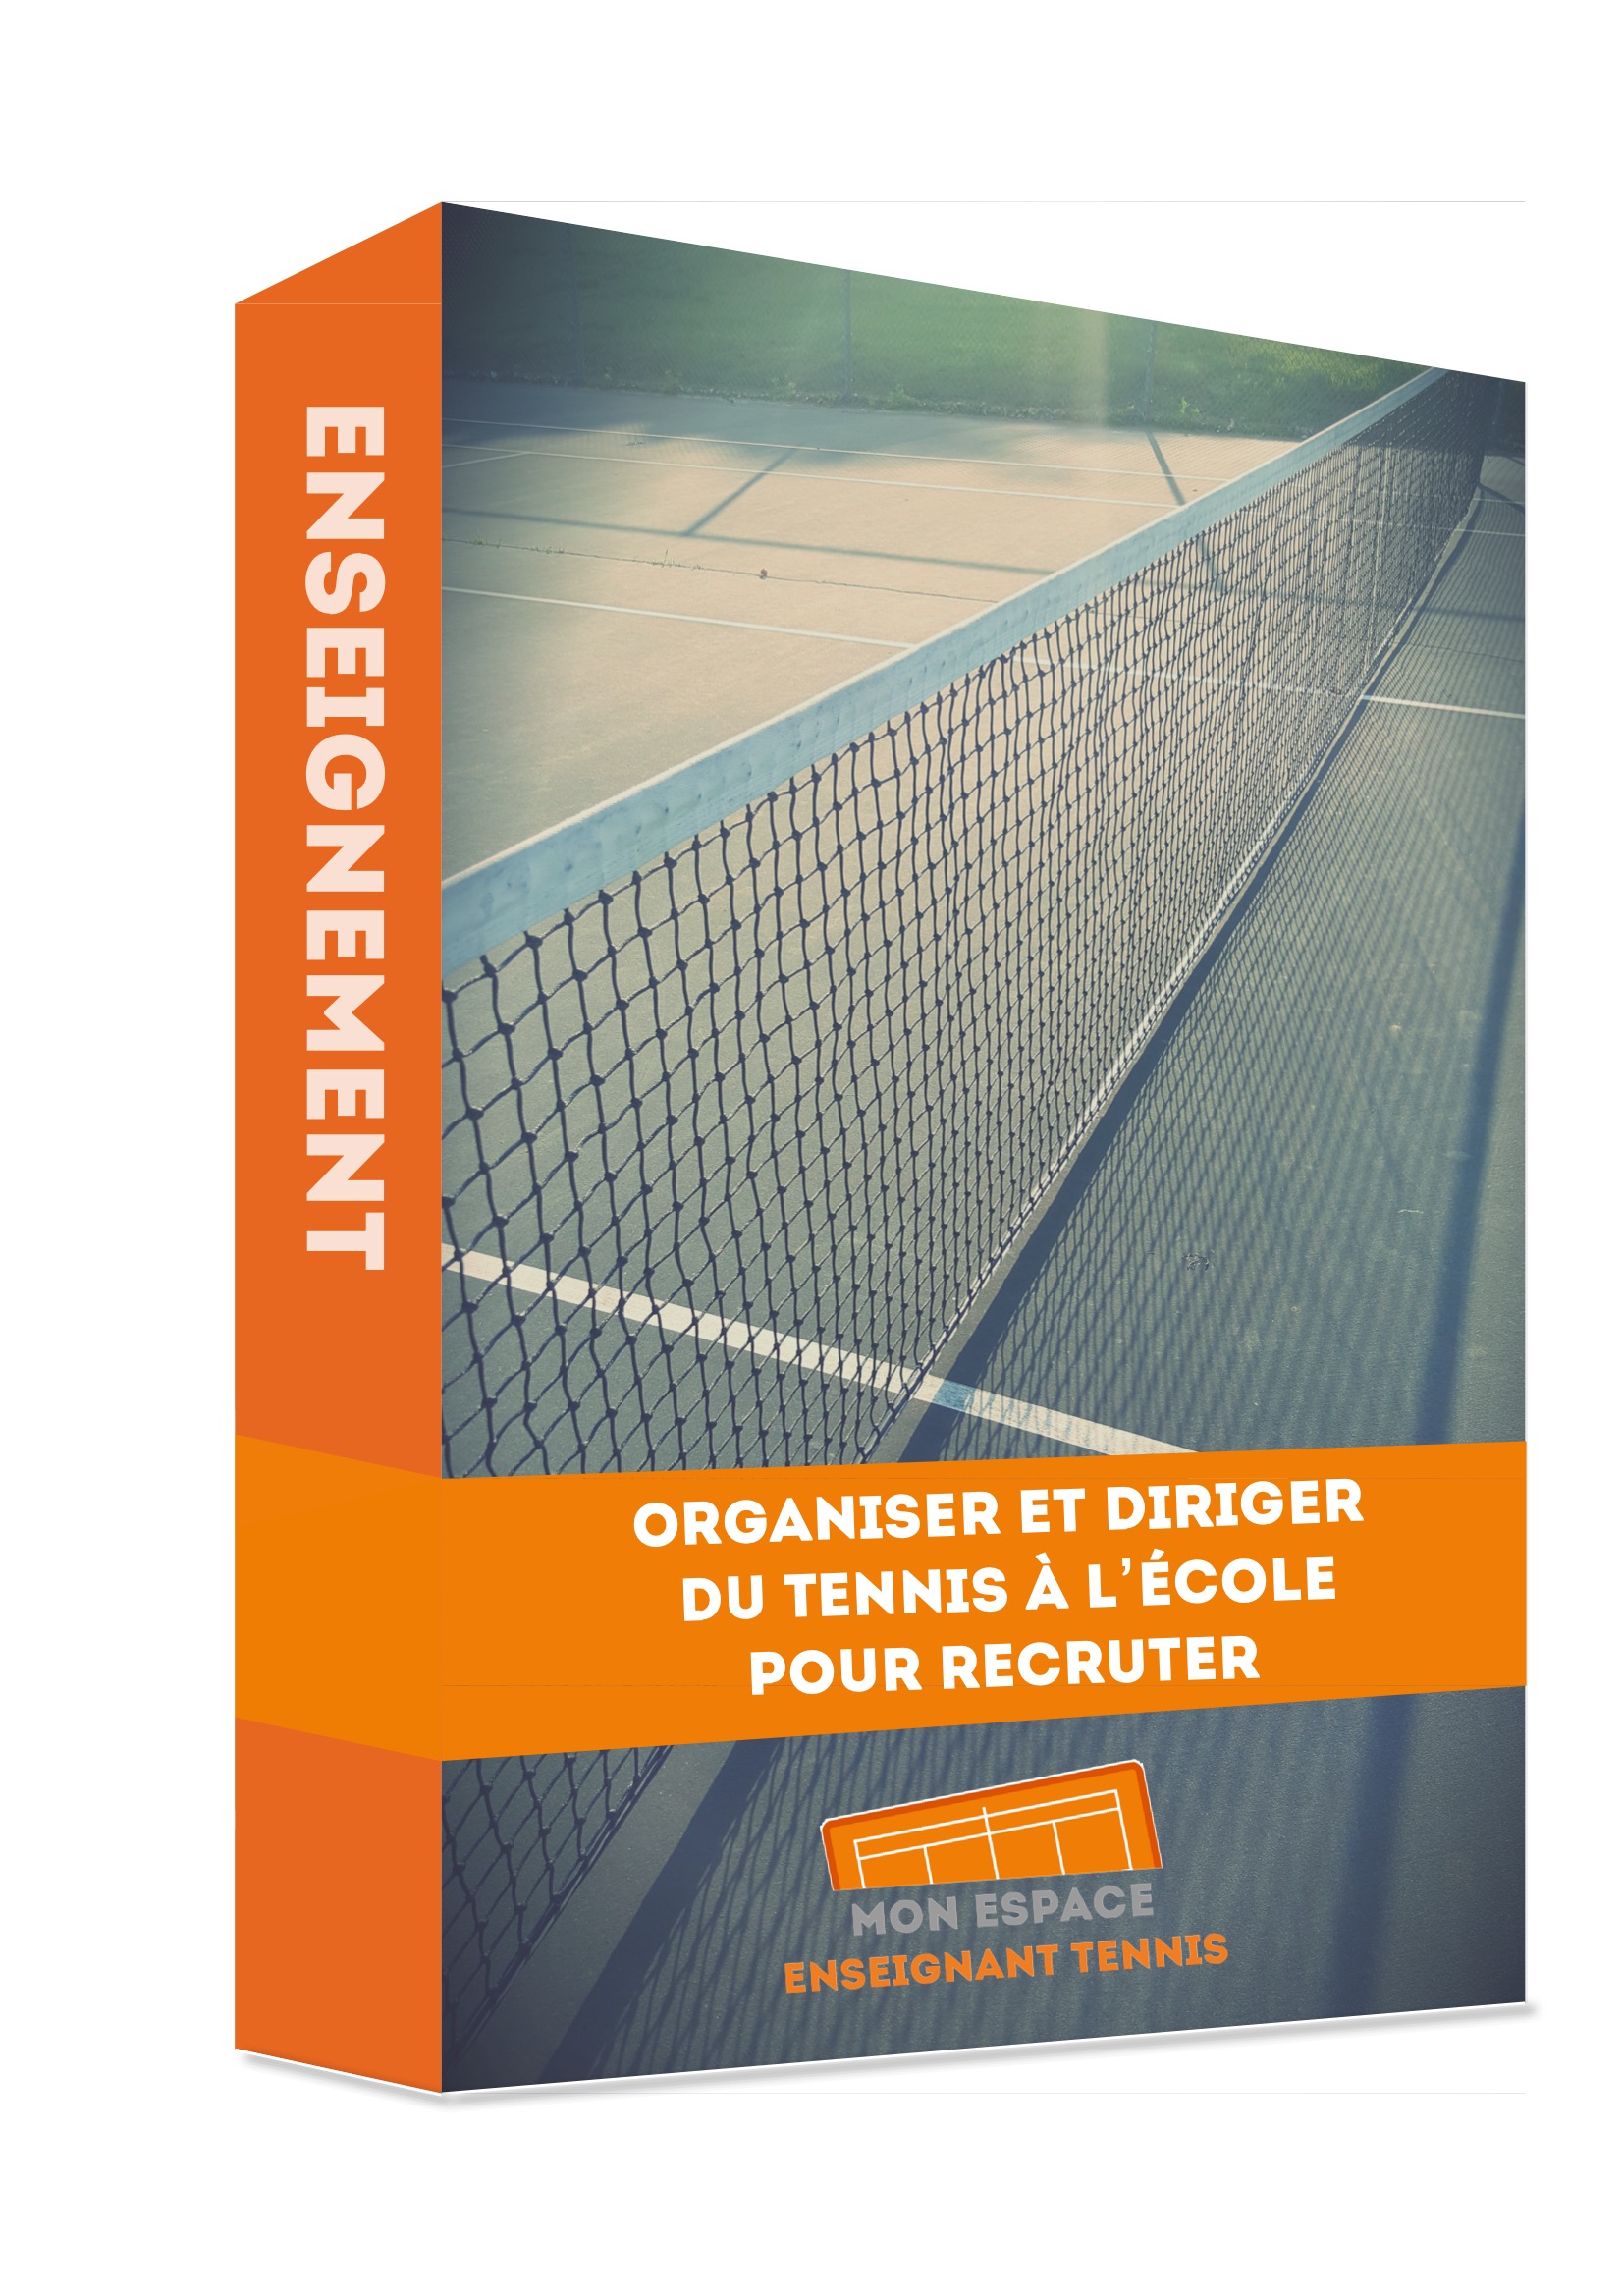 formation, organiser tennis ecole tennis enseignement